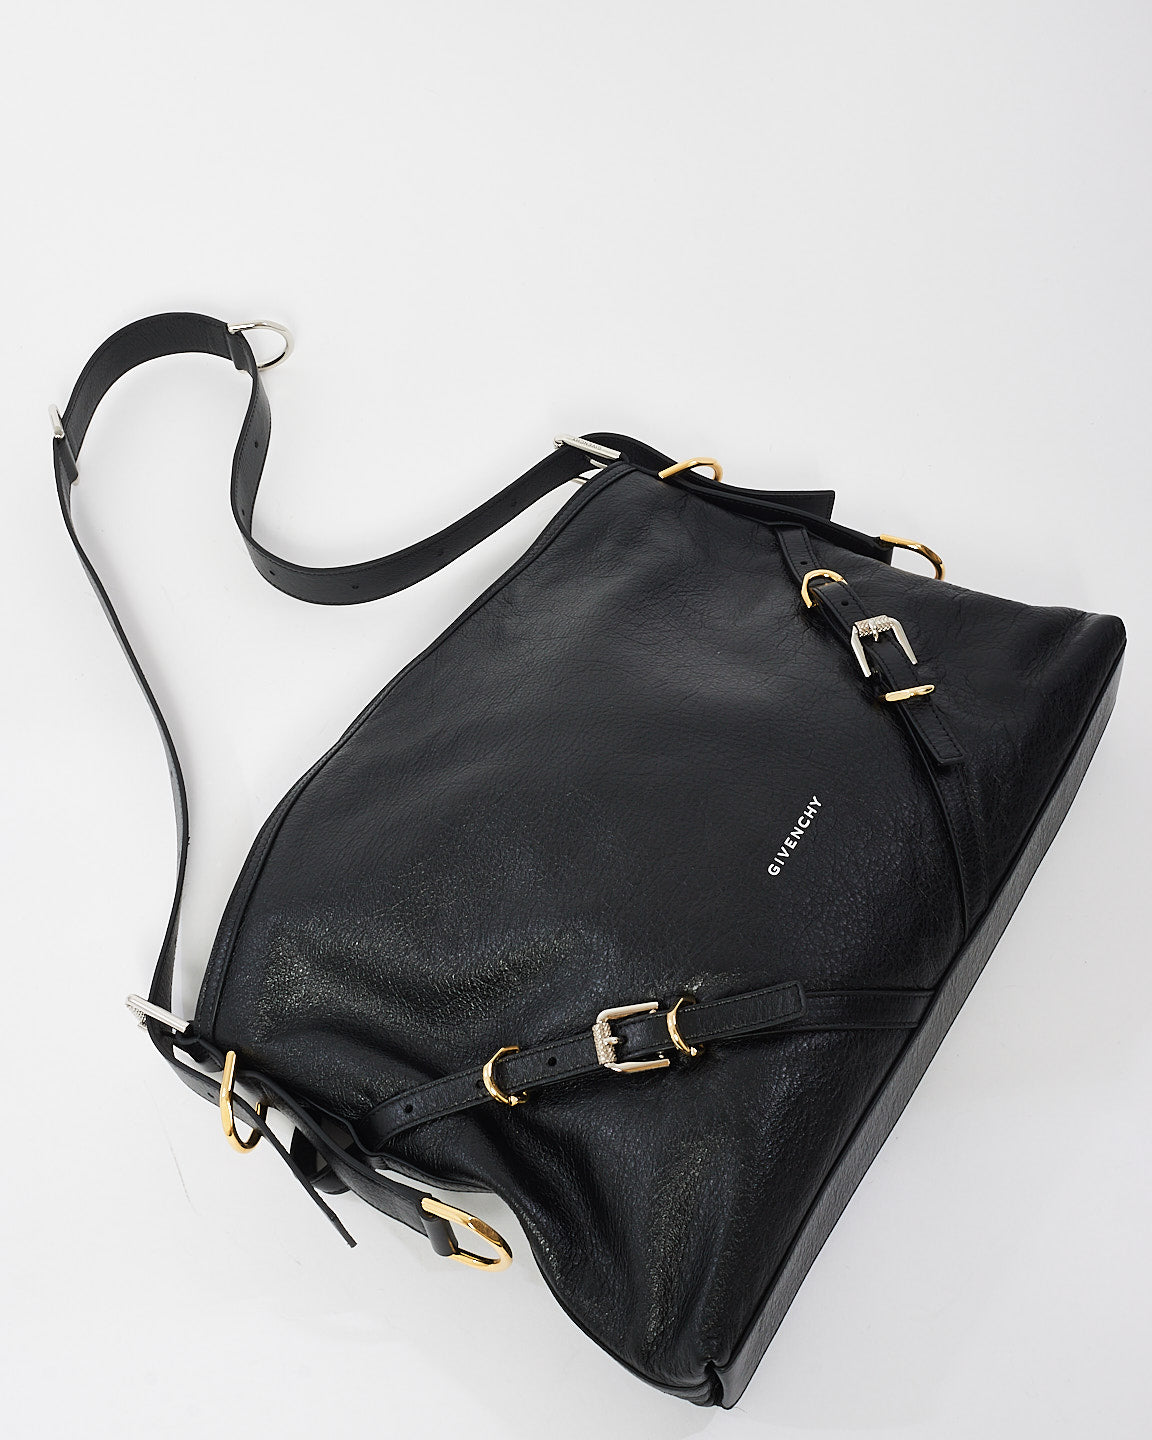 Givenchy Black Leather Voyou Medium Shoulder Bag